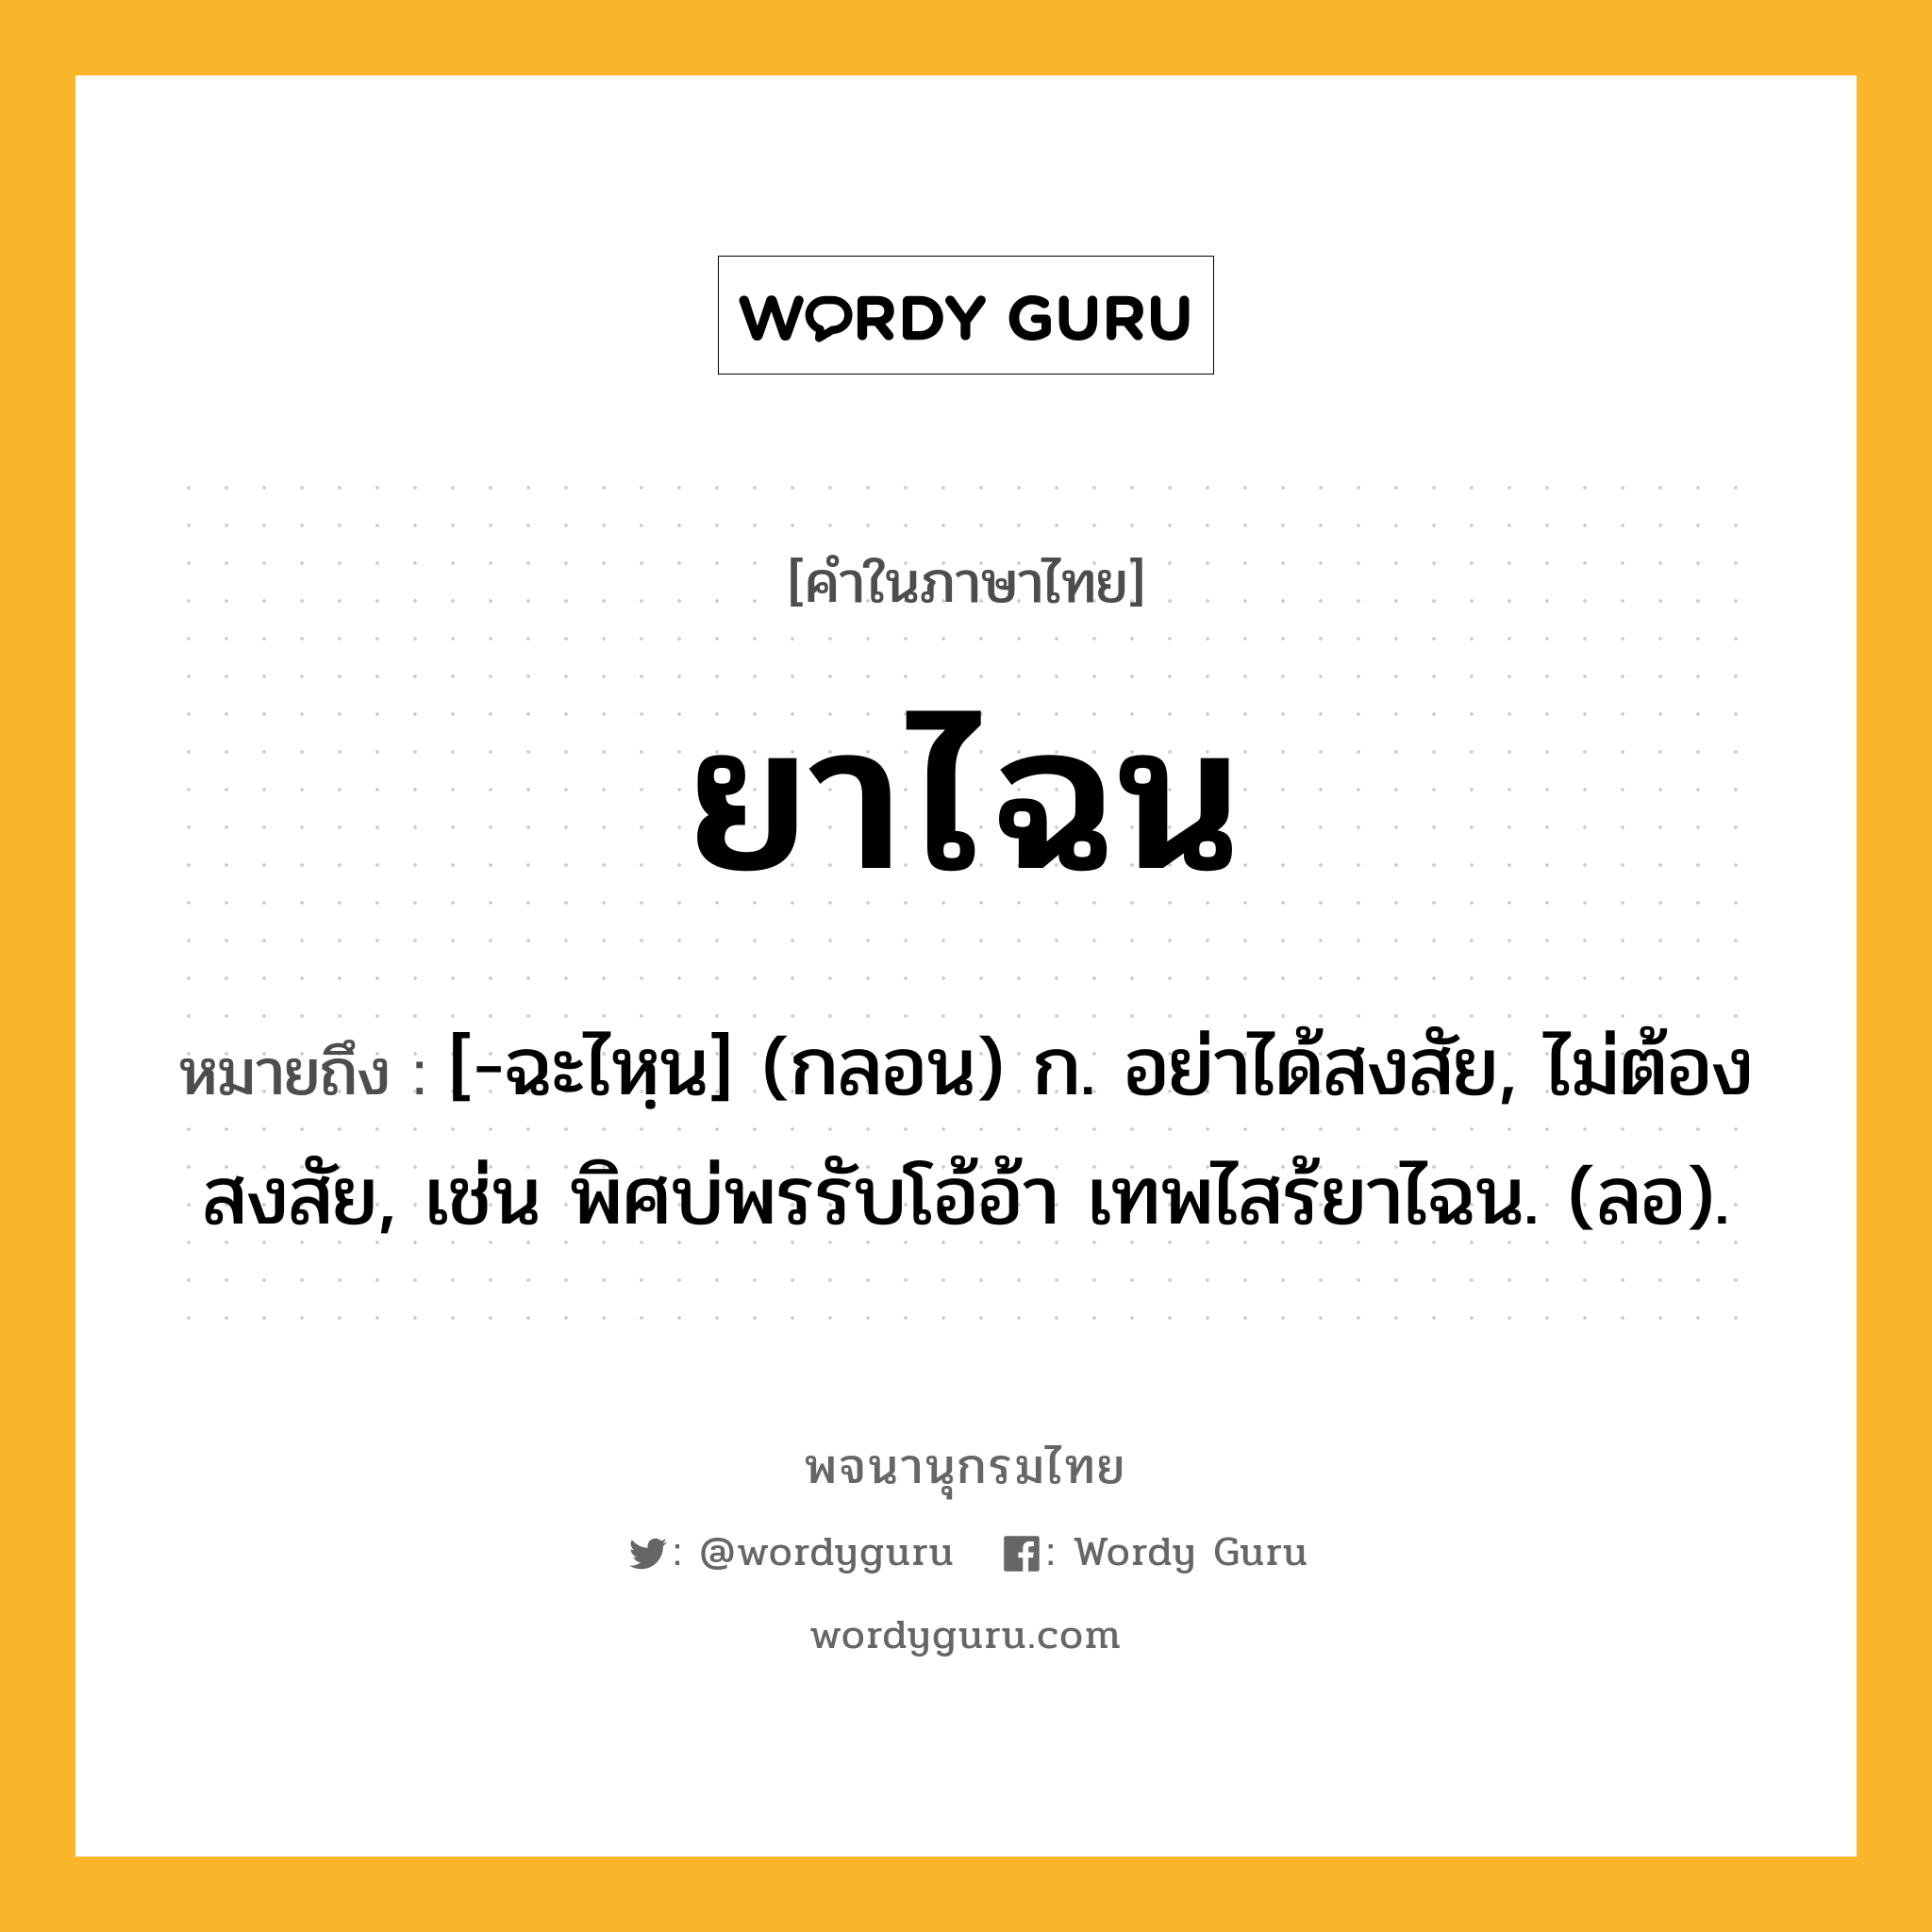 ยาไฉน หมายถึงอะไร?, คำในภาษาไทย ยาไฉน หมายถึง [-ฉะไหฺน] (กลอน) ก. อย่าได้สงสัย, ไม่ต้องสงสัย, เช่น พิศบ่พรรับโอ้อ้า เทพไสร้ยาไฉน. (ลอ).